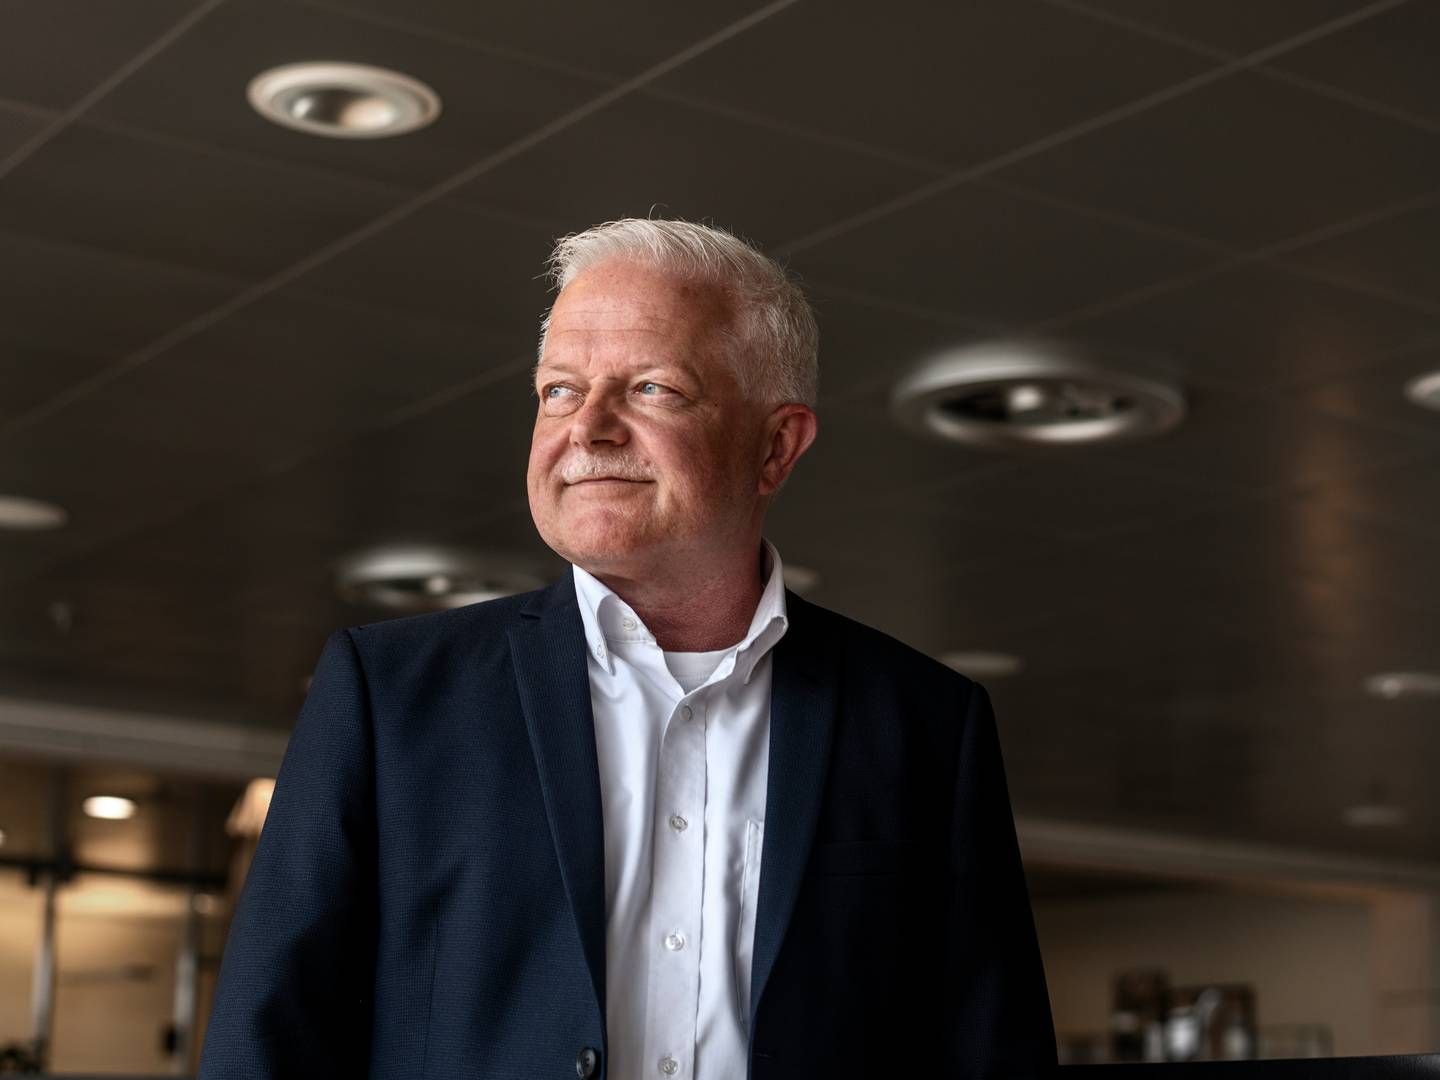 Mikael Nielsen, som er retaildirektør og en del af direktionen, har været ansat i Jysk-koncernen siden 1988. | Foto: Marie Ravn